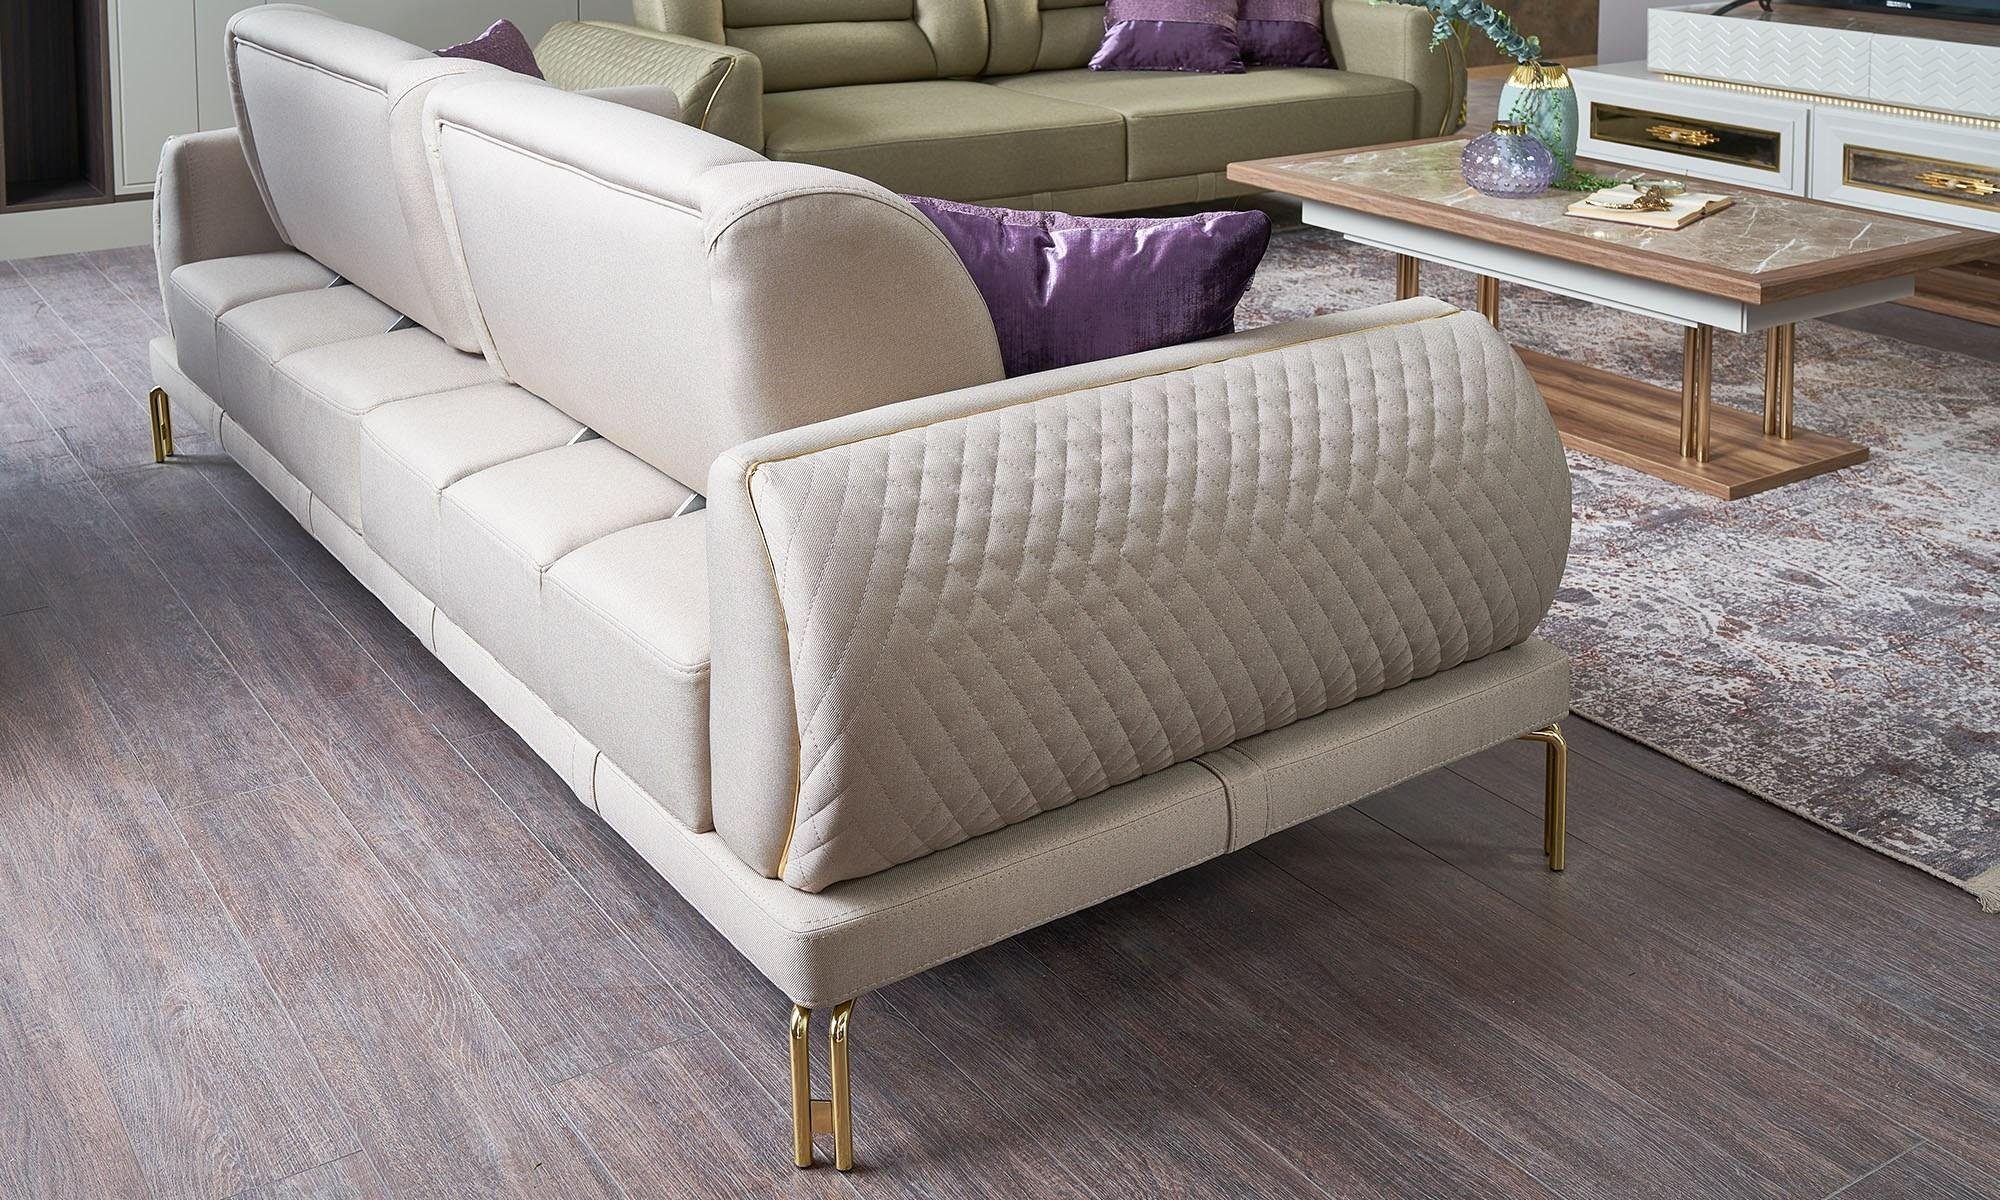 JVmoebel 3-Sitzer Dreisitzer Couch Europa Sitzer Beige Teile, Made Polstersofa 3 in 1 Sofa Luxus